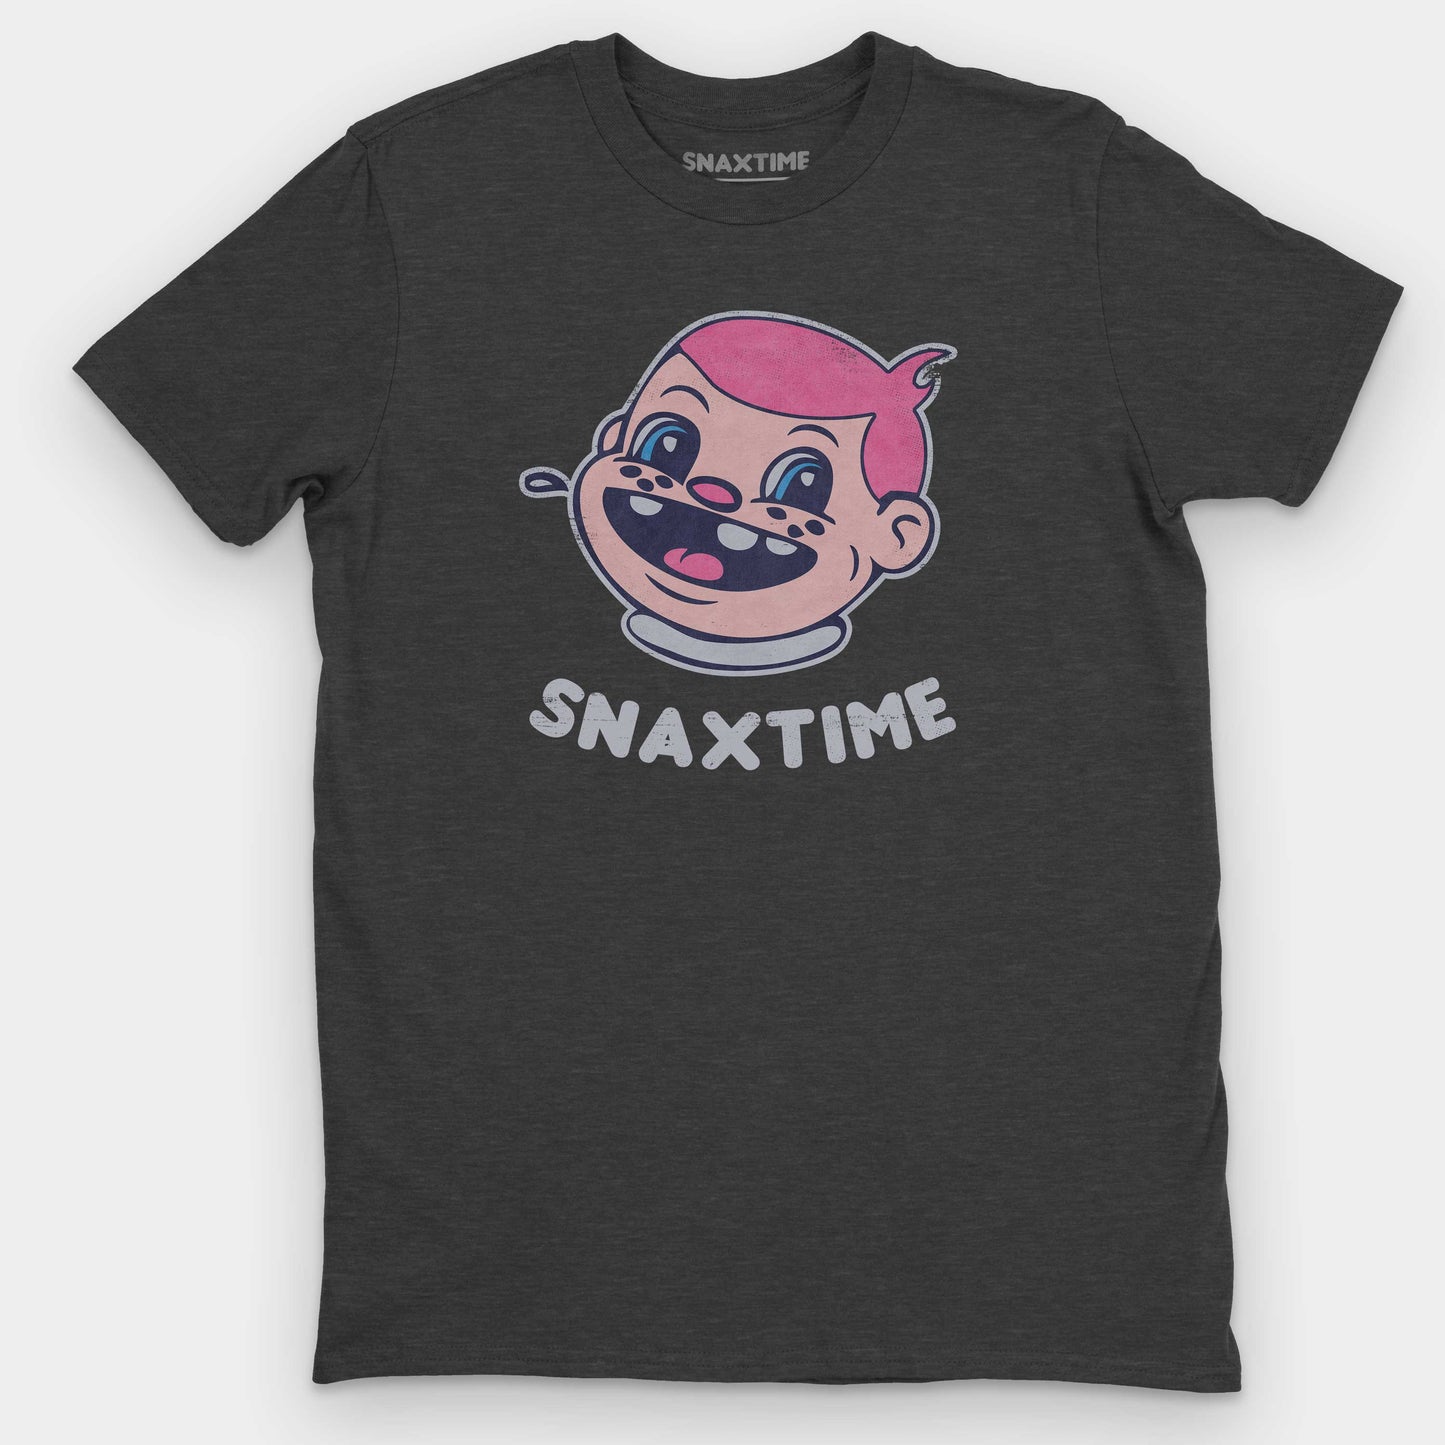 Heather Dark Grey Snaxtime Original Graphic T-Shirt by Snaxtime